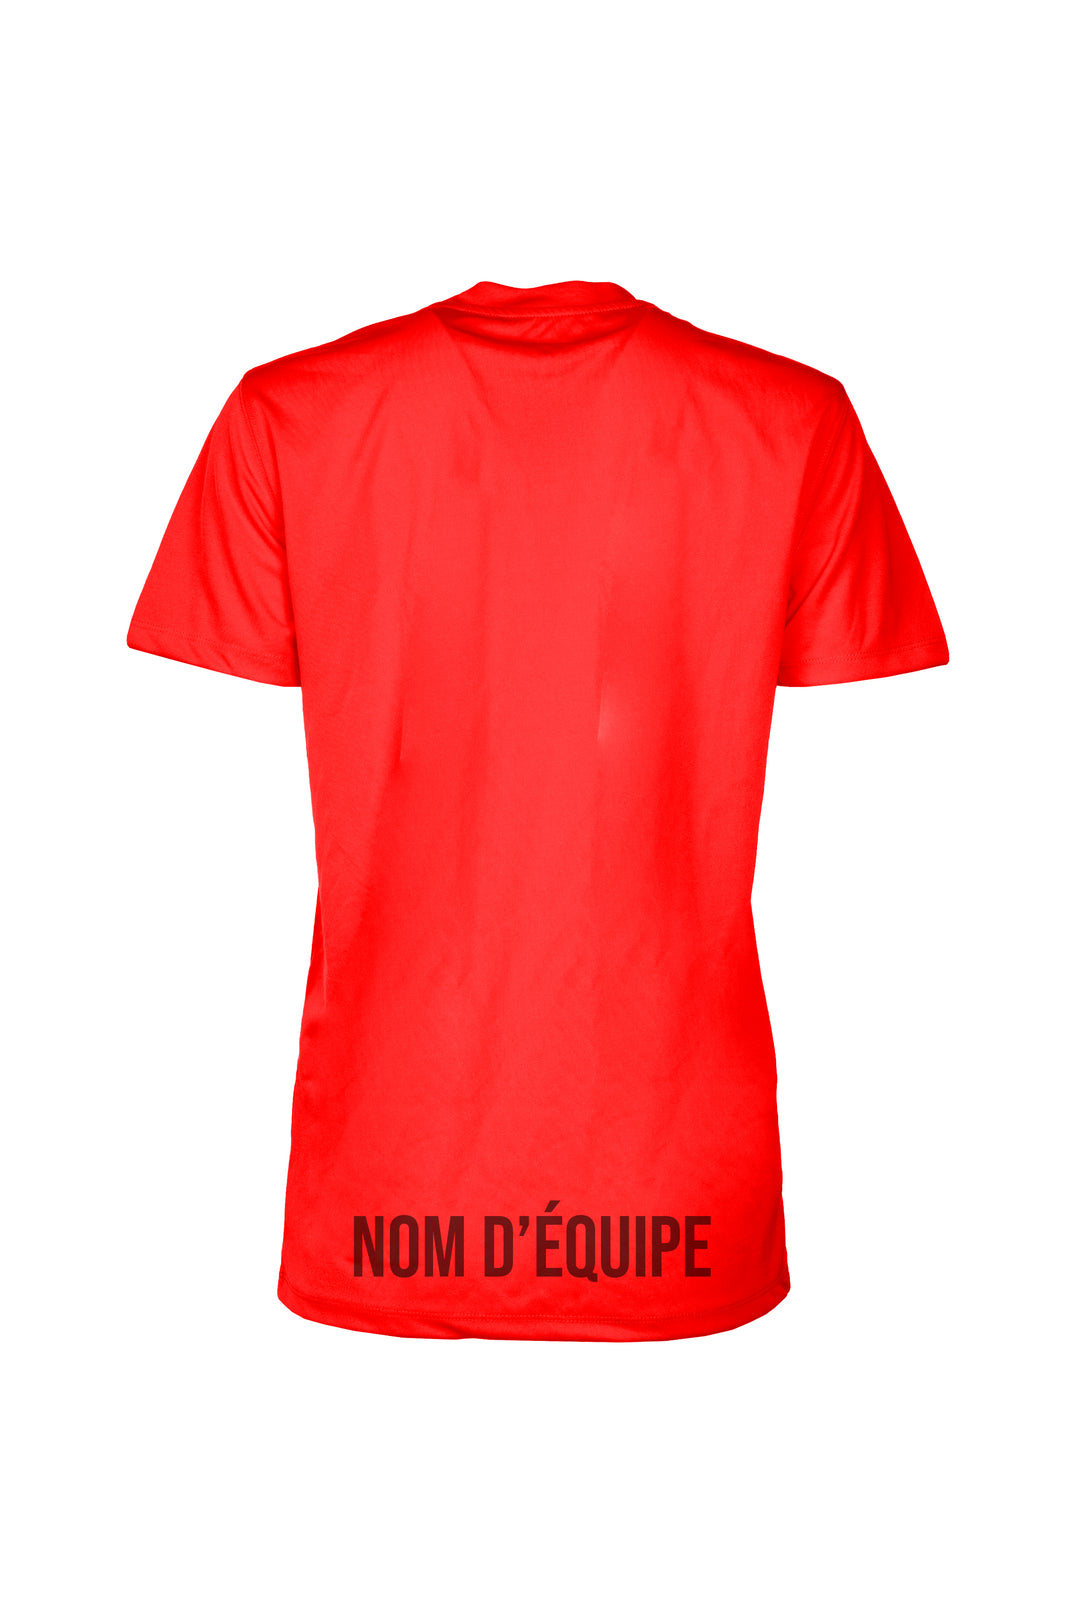 T-shirts sportif - 24h Tremblant avec nom d'équipe personnalisable [Rouge]